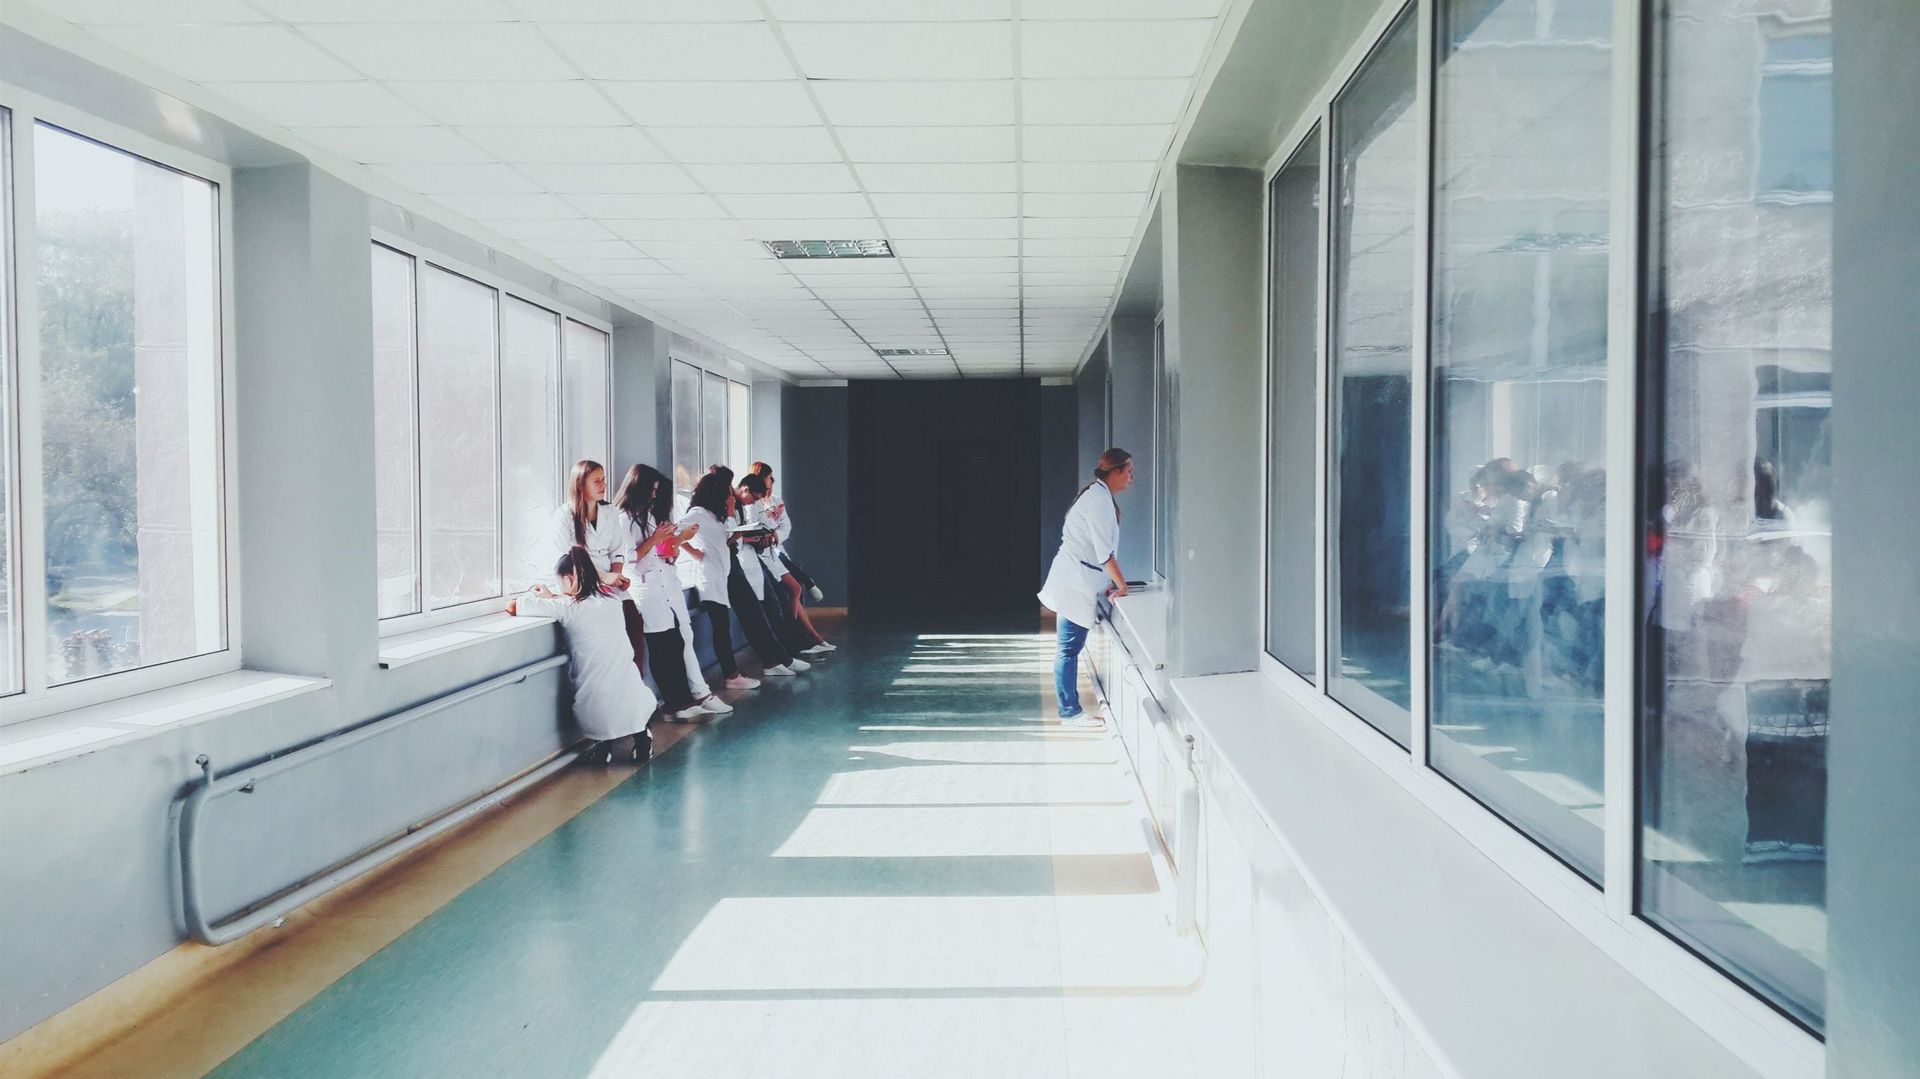 Les hôpitaux universitaires francophones déplorent une "grève pénalisante" des médecins assistants